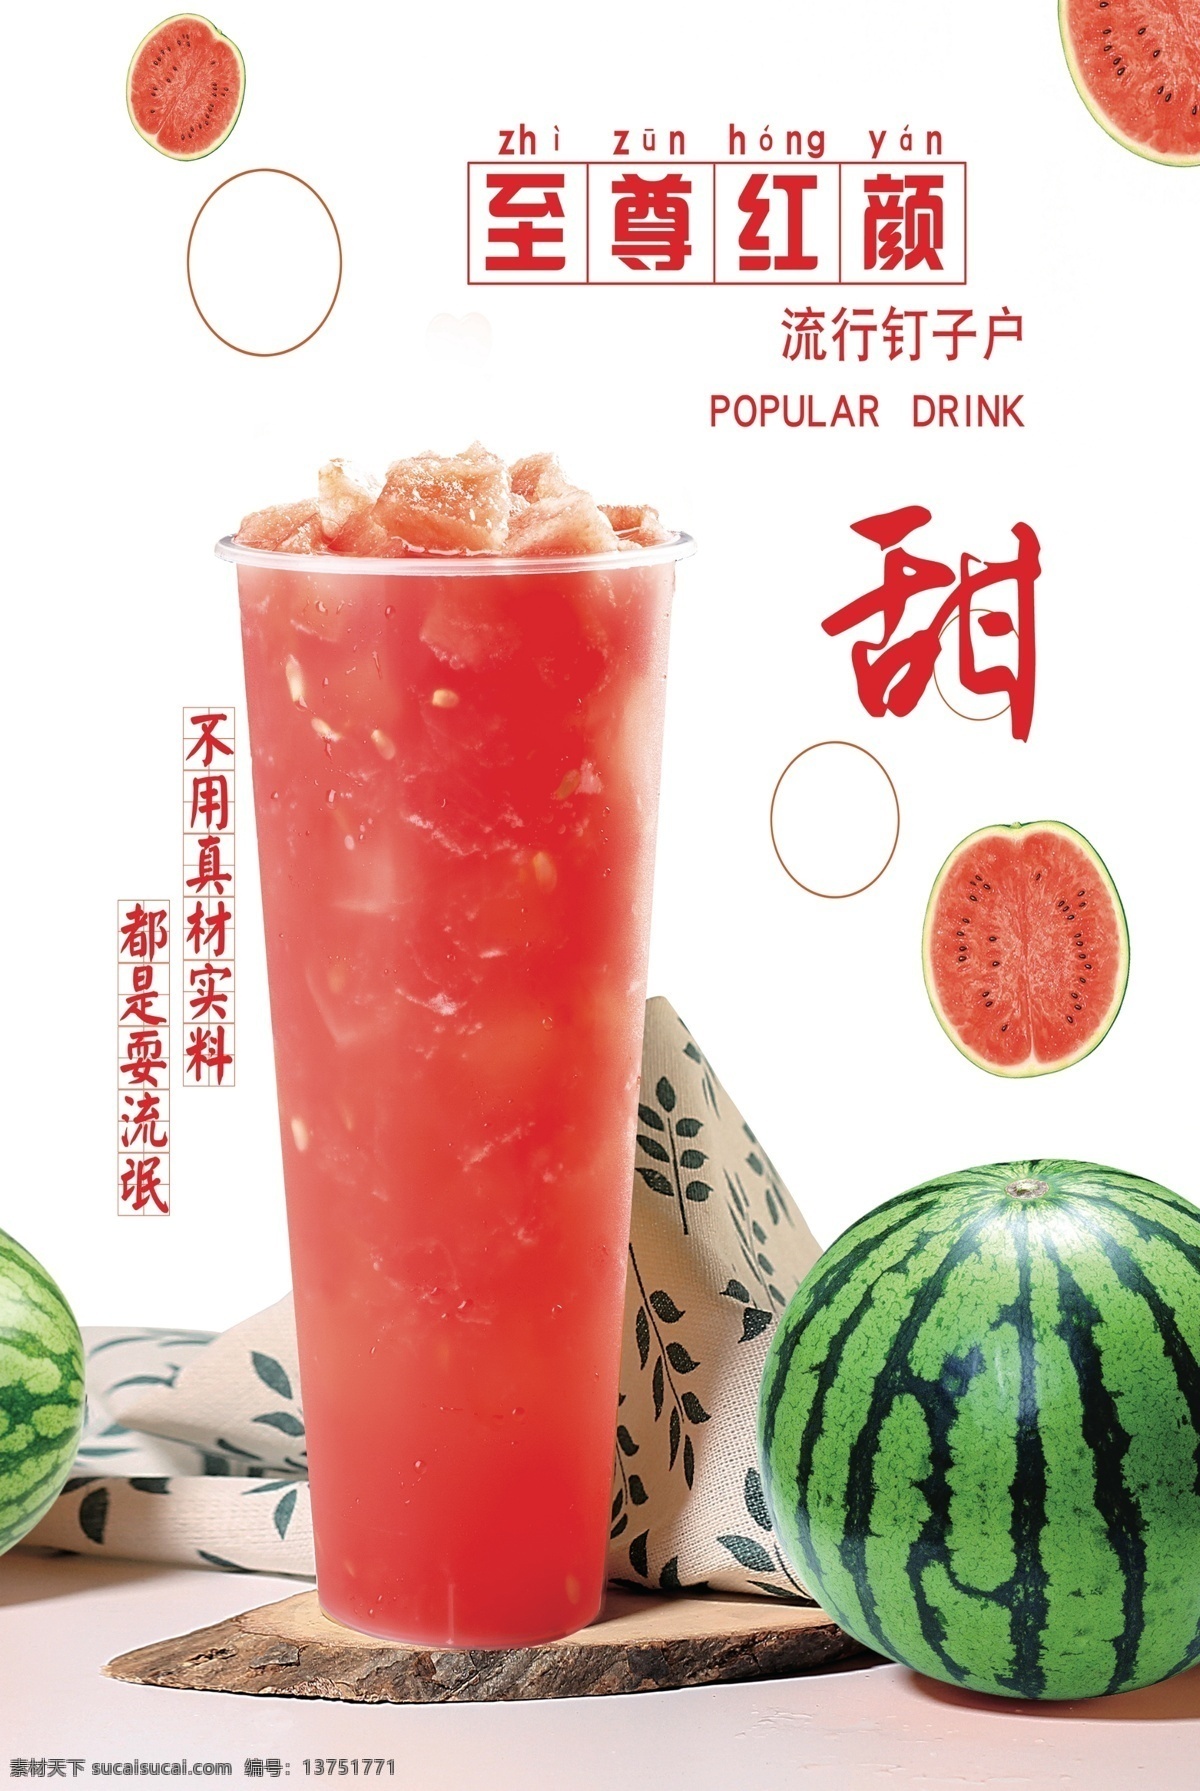 至尊红颜 冷饮 西瓜汁 甜味 饮料 众客 果汁 招贴设计